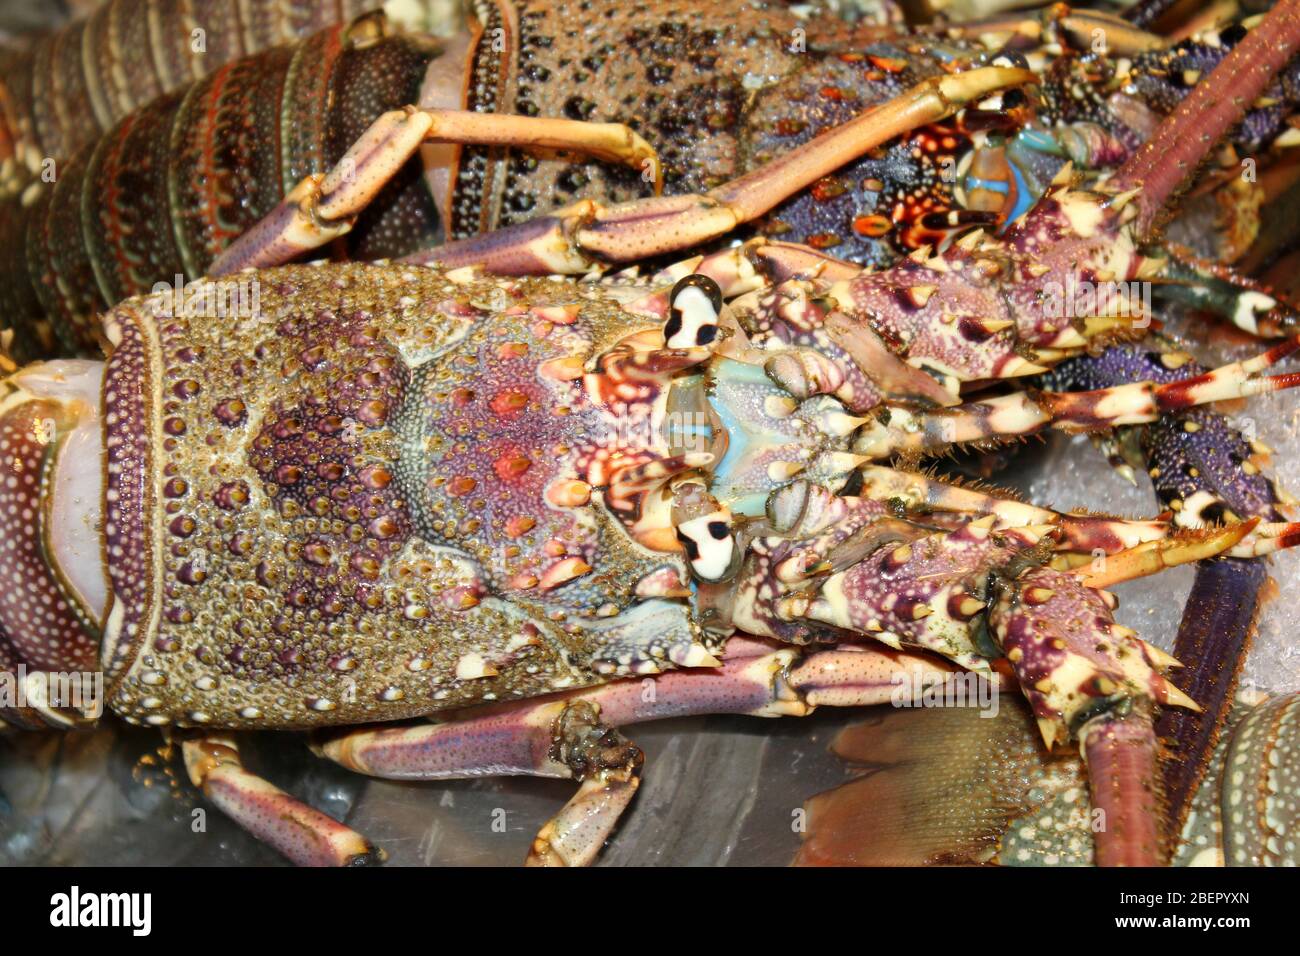 Rock orné Lobster Panulirus ornatus à vendre au marché nocturne de Hua Hin, Thaïlande Banque D'Images